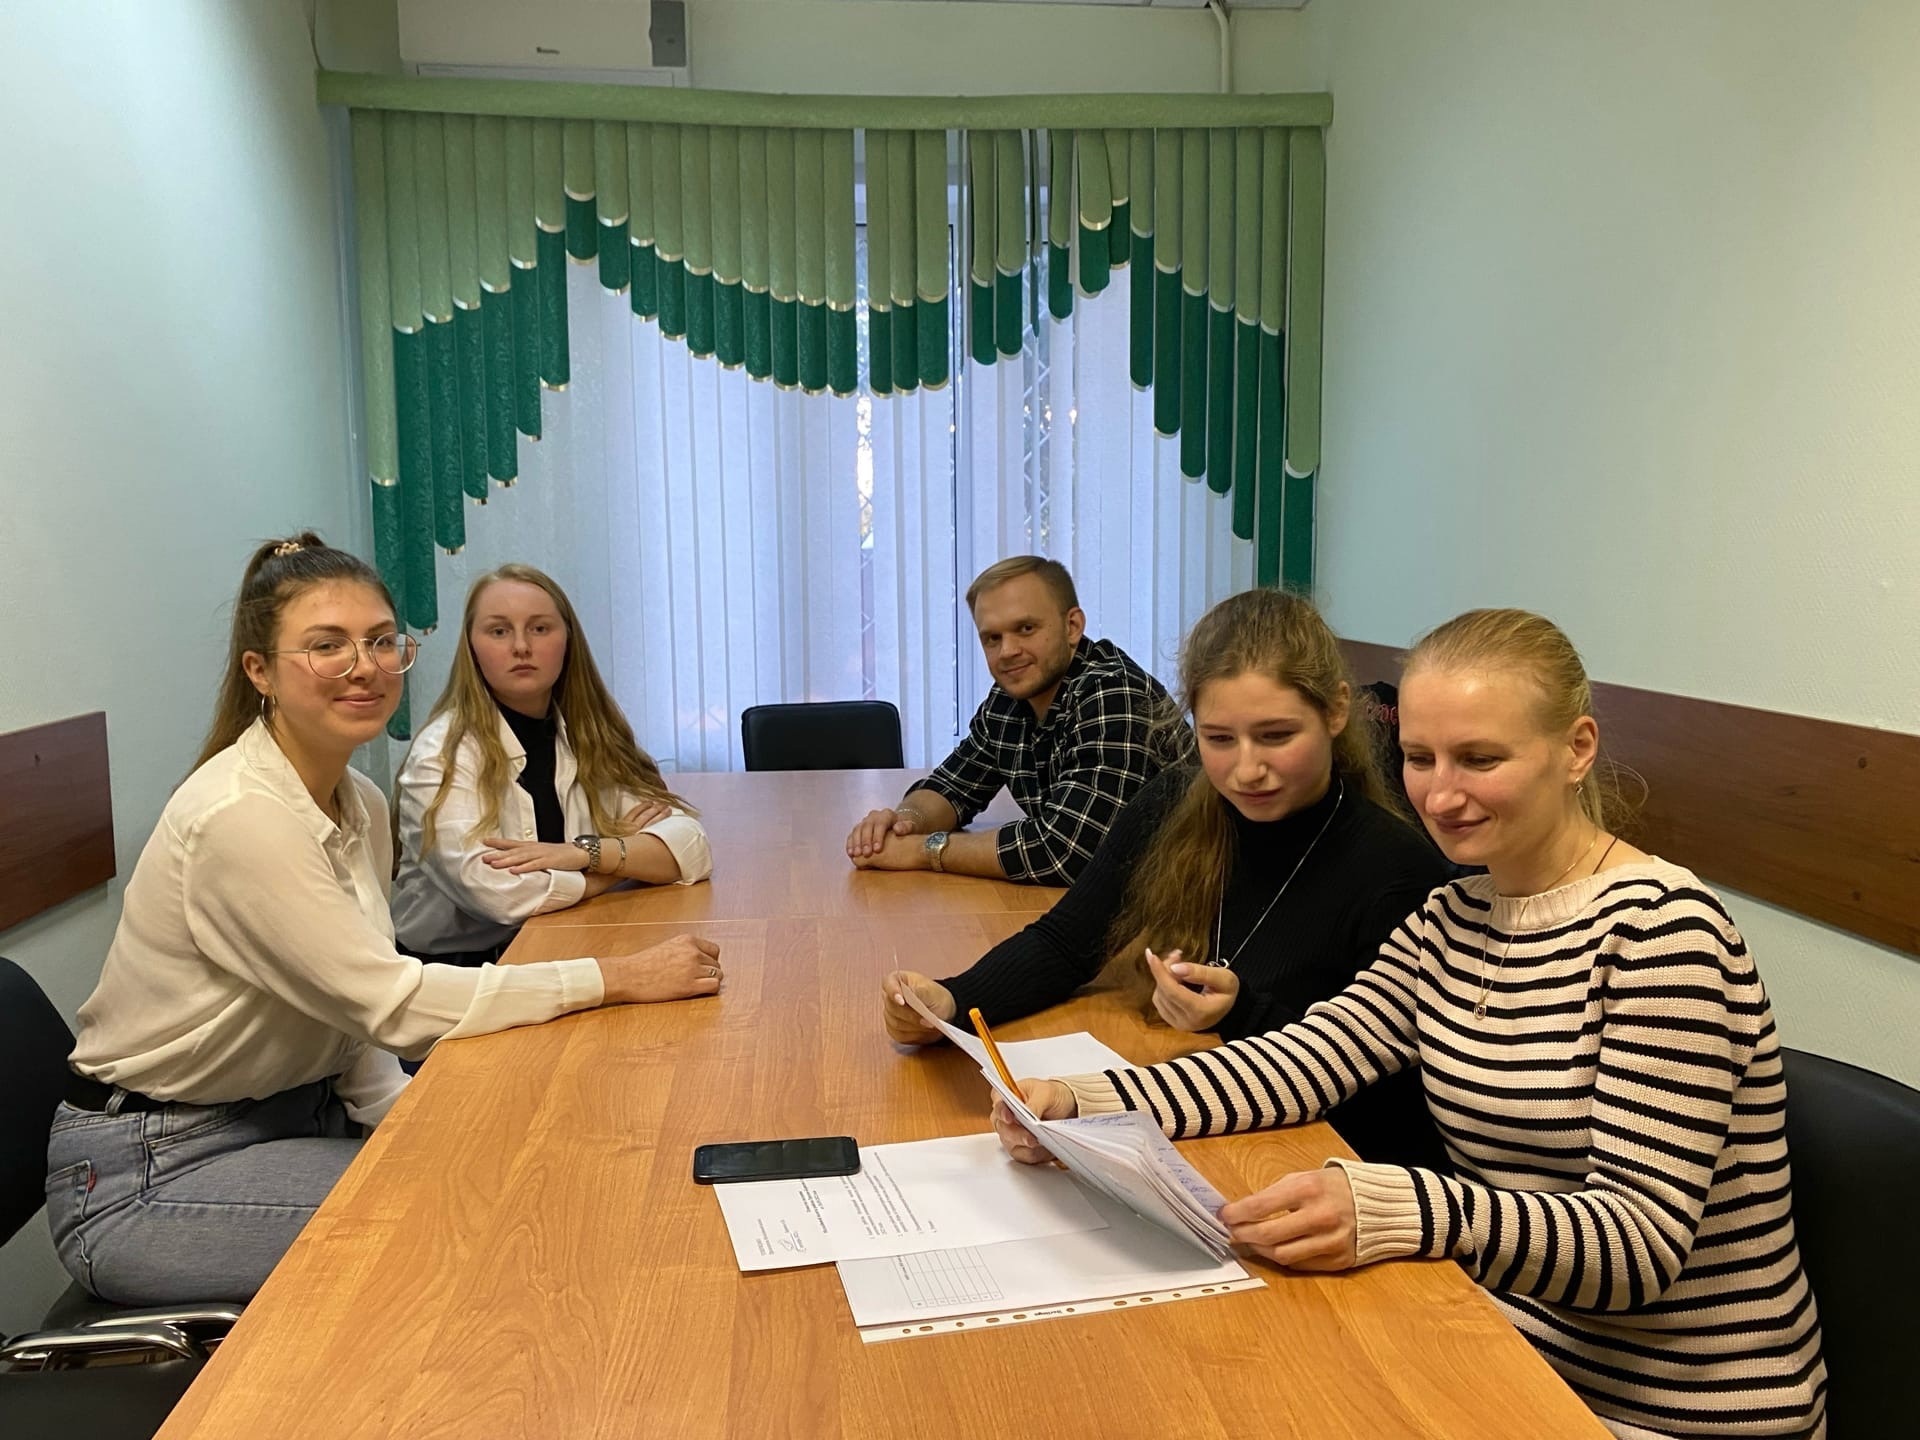 Экскурсию в Министерство финансов организует Молодежная палата Орехова-Борисова Северного